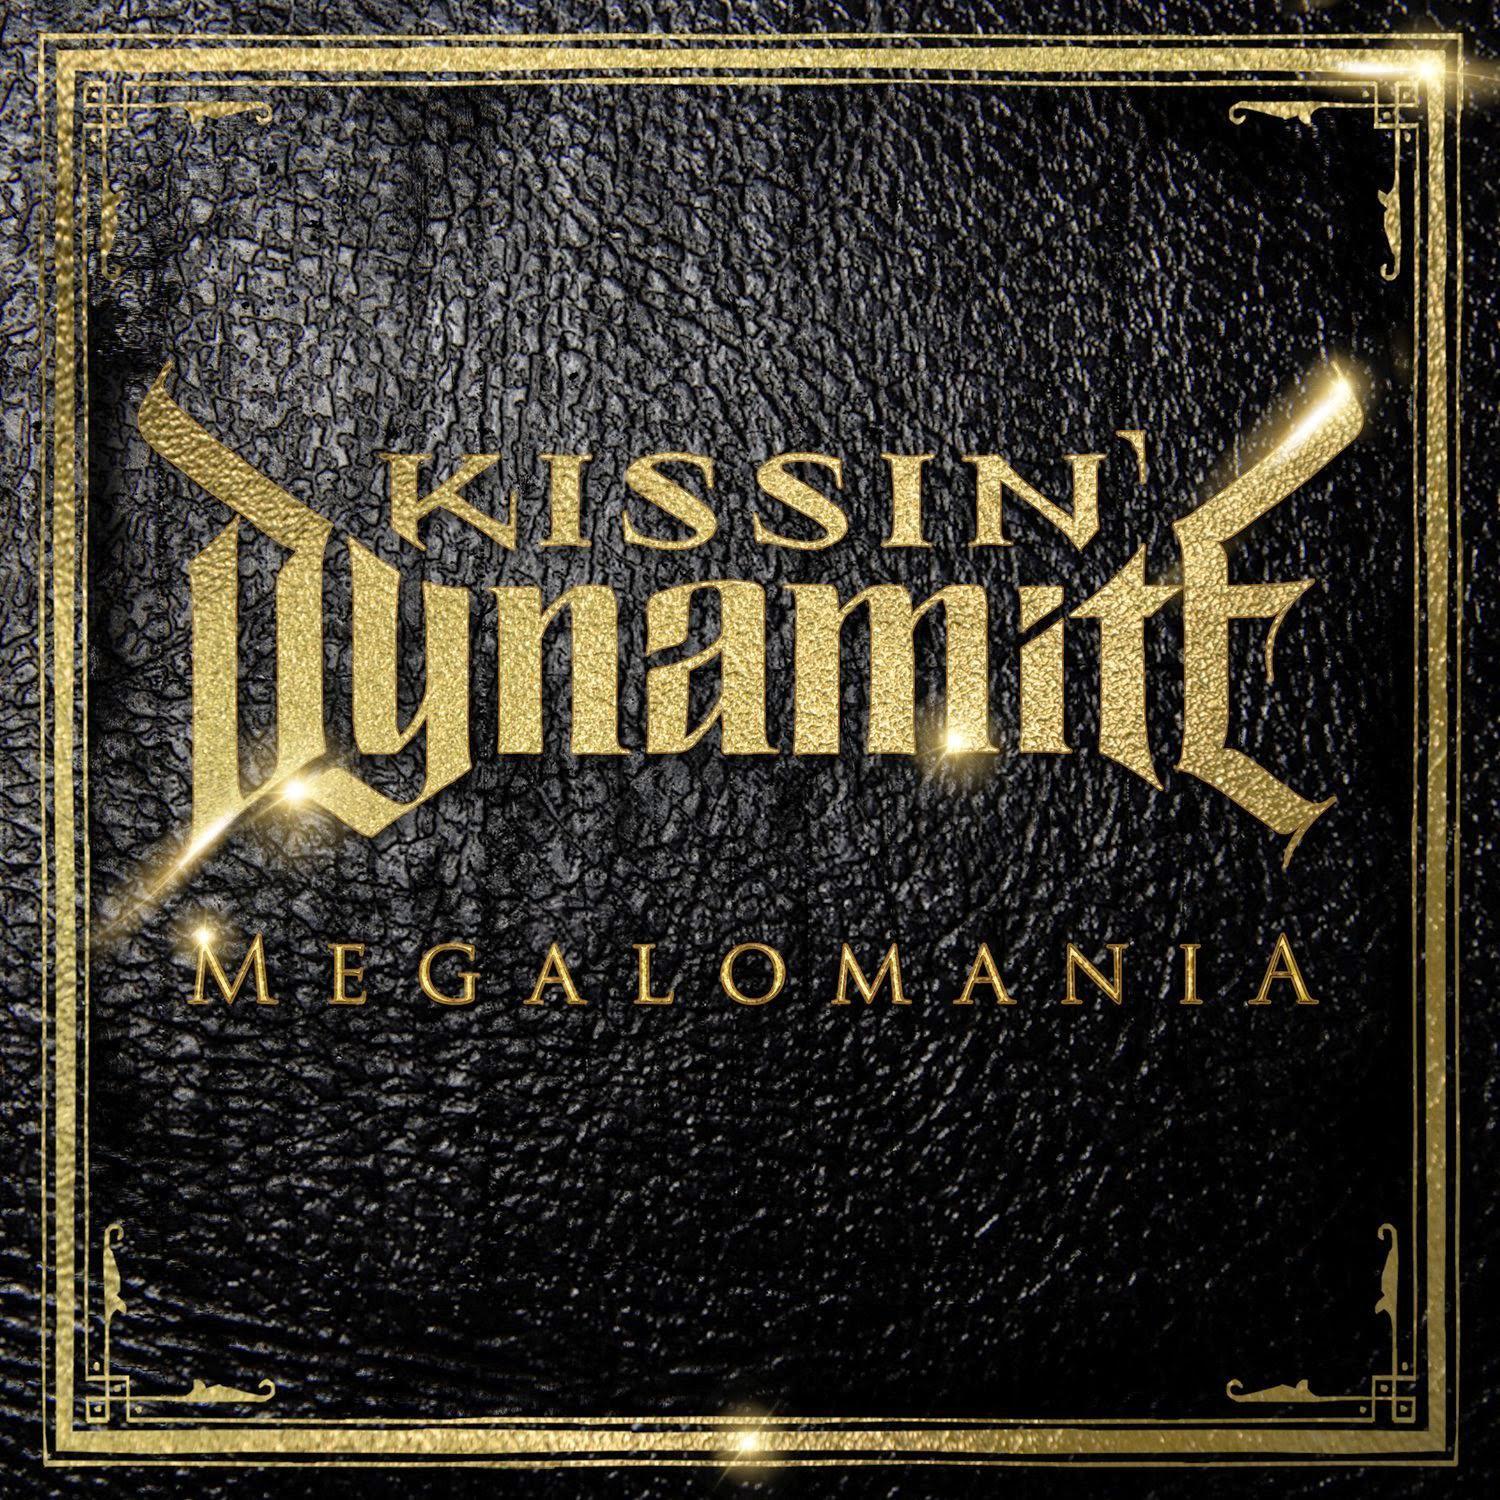 Мегаломан. Kissin Dynamite Megalomania. Kissin Dynamite Megalomania 2014. Группа Kissin’ Dynamite. Kissin Dynamite addicted to Metal.